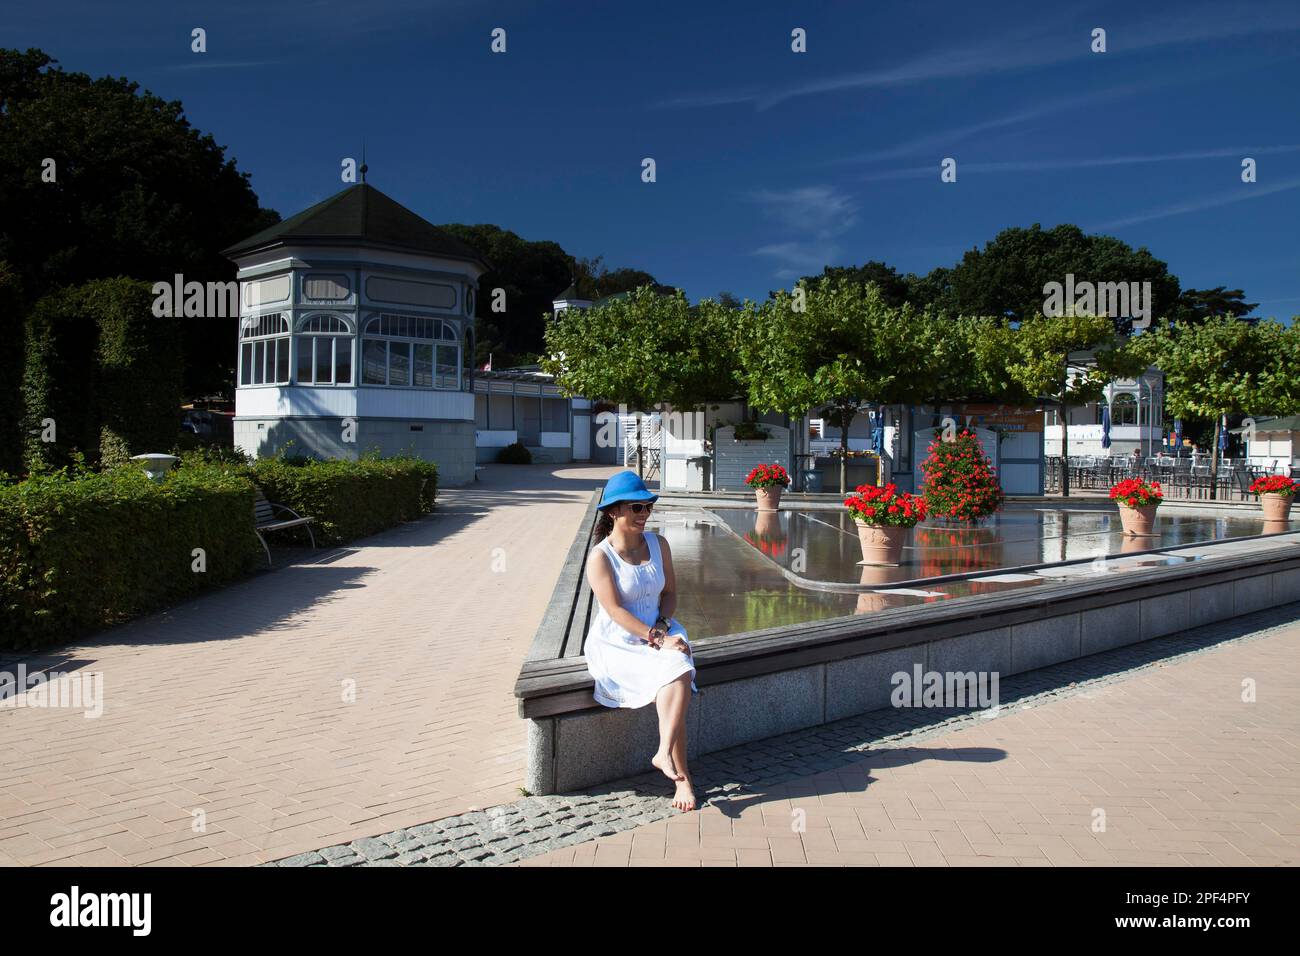 Promenade au bord du lac, station balnéaire de Goehren, île de Ruegen, Mecklembourg-Poméranie occidentale, Goehren, Allemagne Banque D'Images